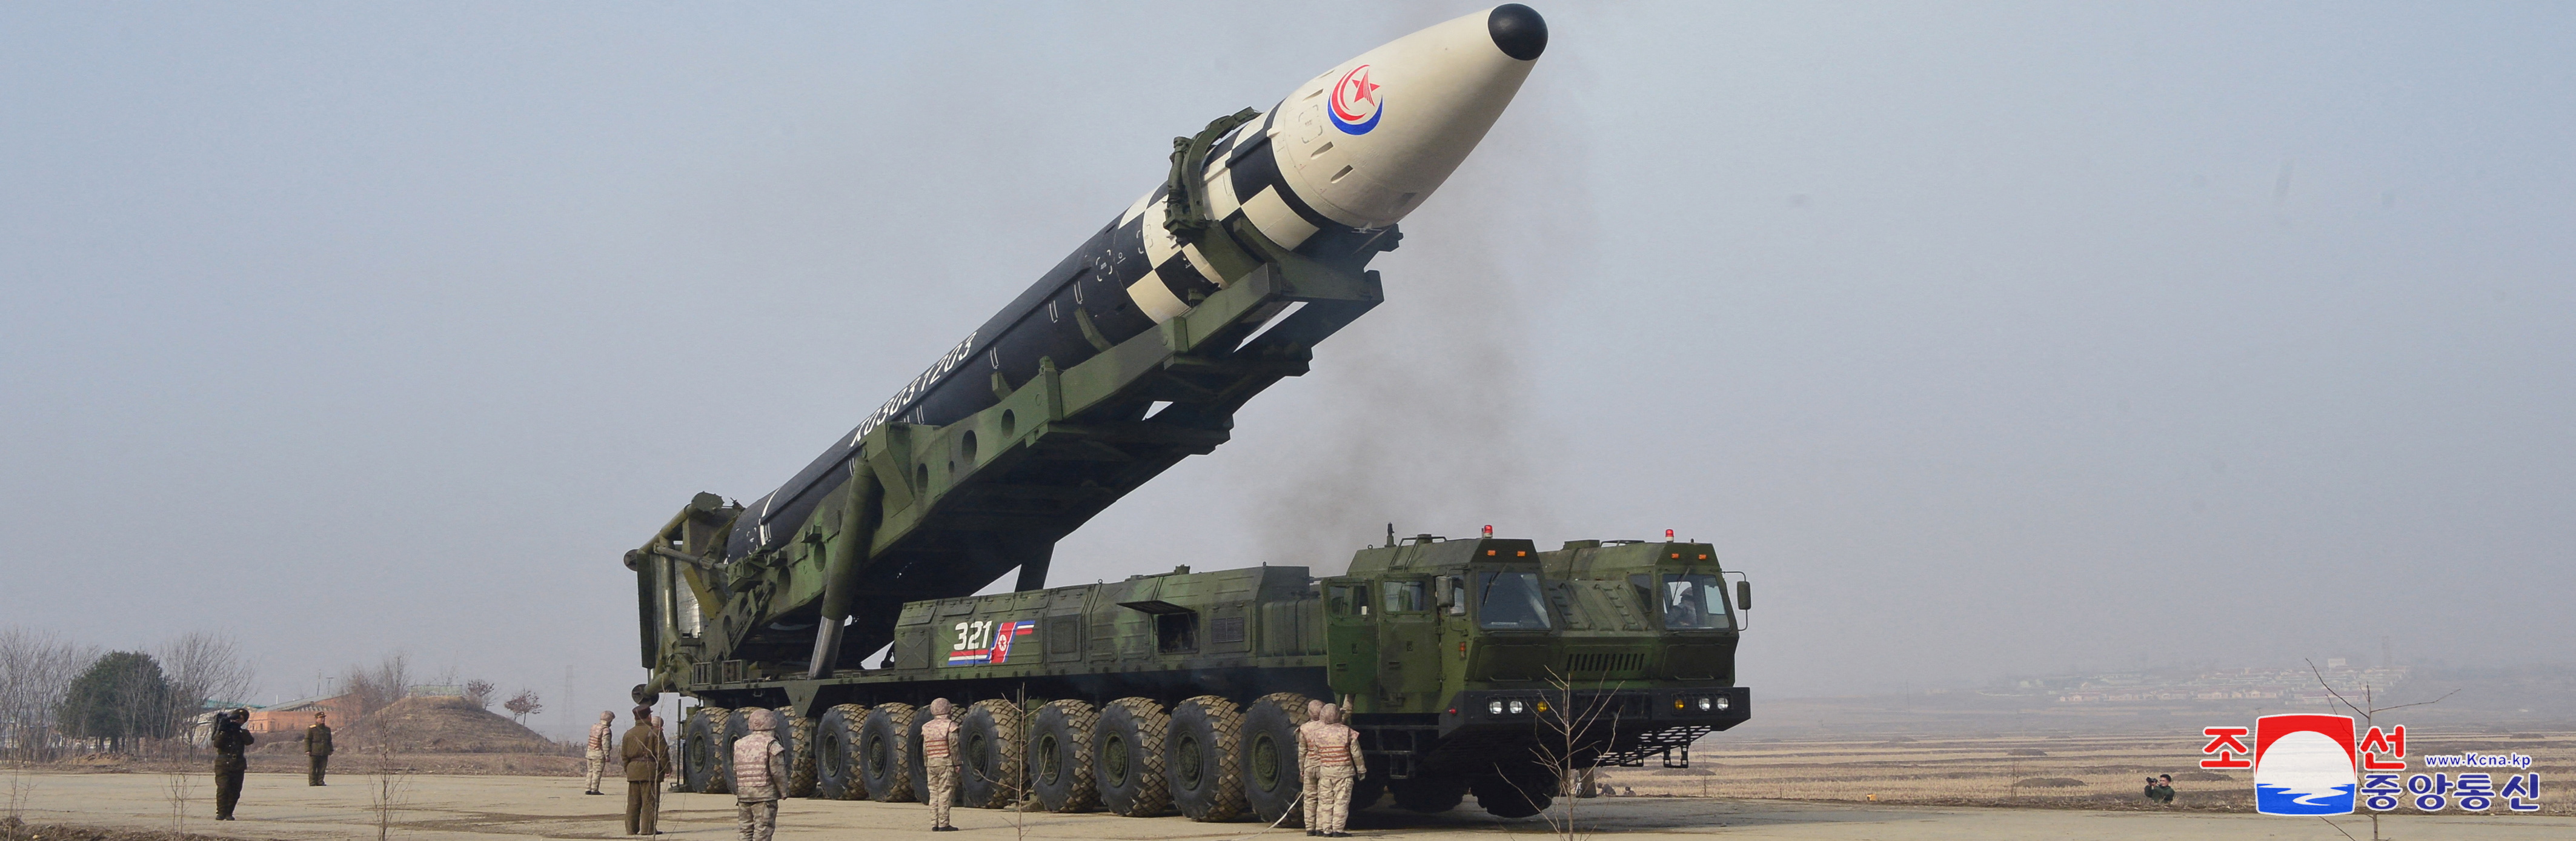 官方媒体报道的一般观点是其运载火箭上的“Hwasong-17”洲际弹道导弹（ICBM）。